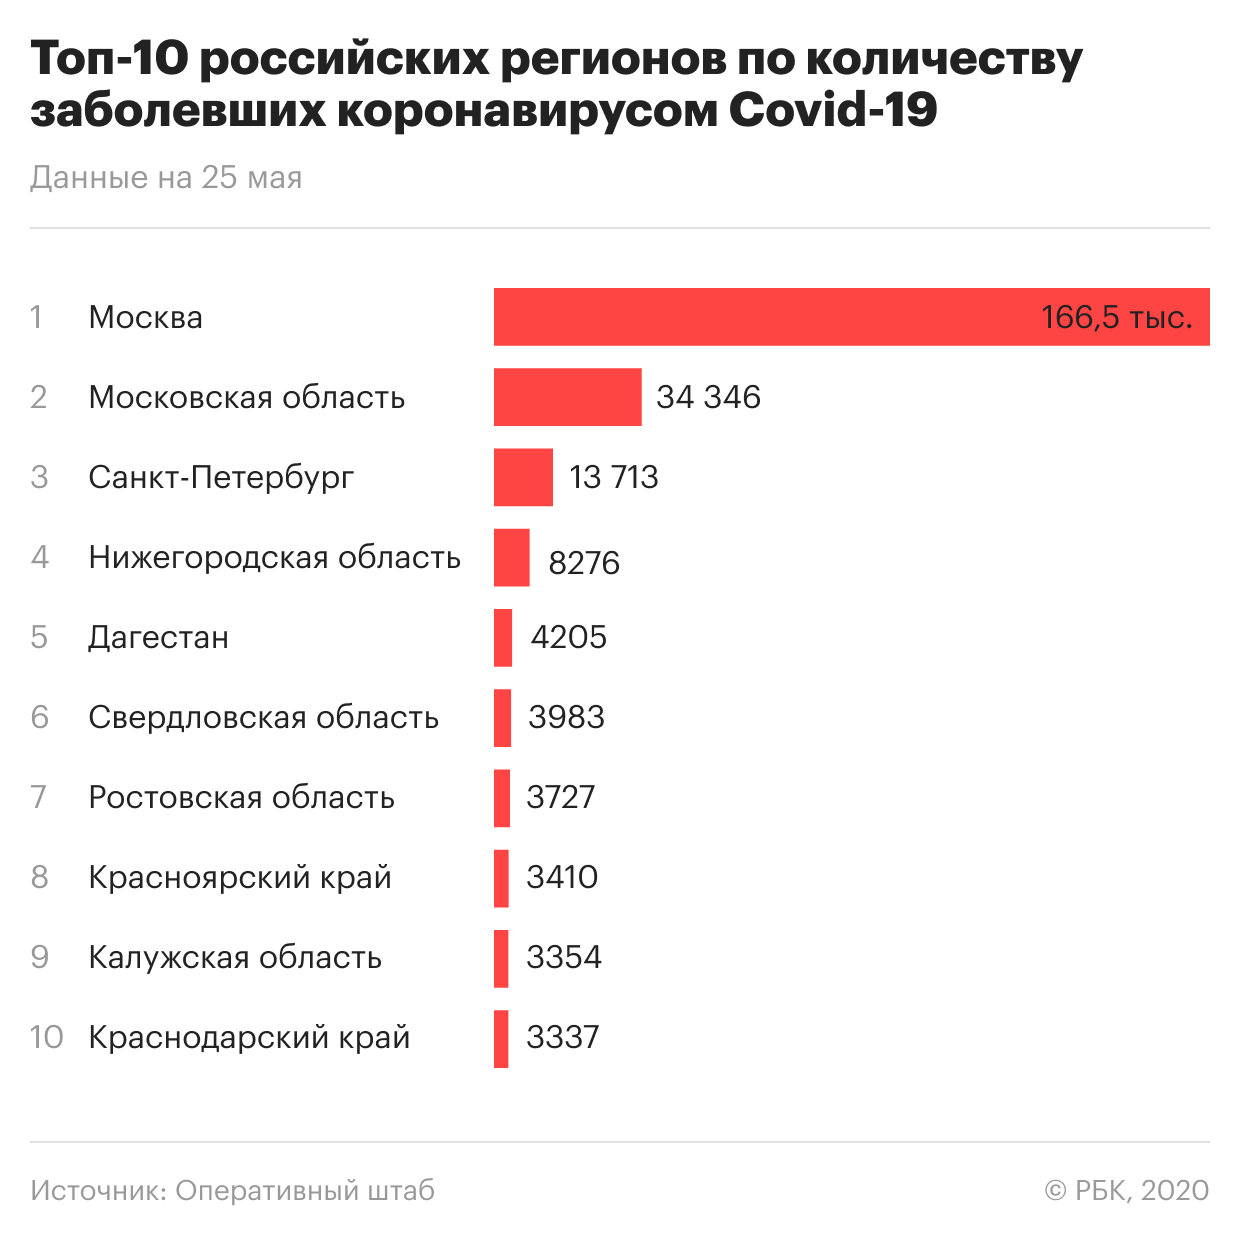 Сколько заболевших в России. Сколько человек заболело коронавиру. Количество заболевших. Статистика пандемии в России.